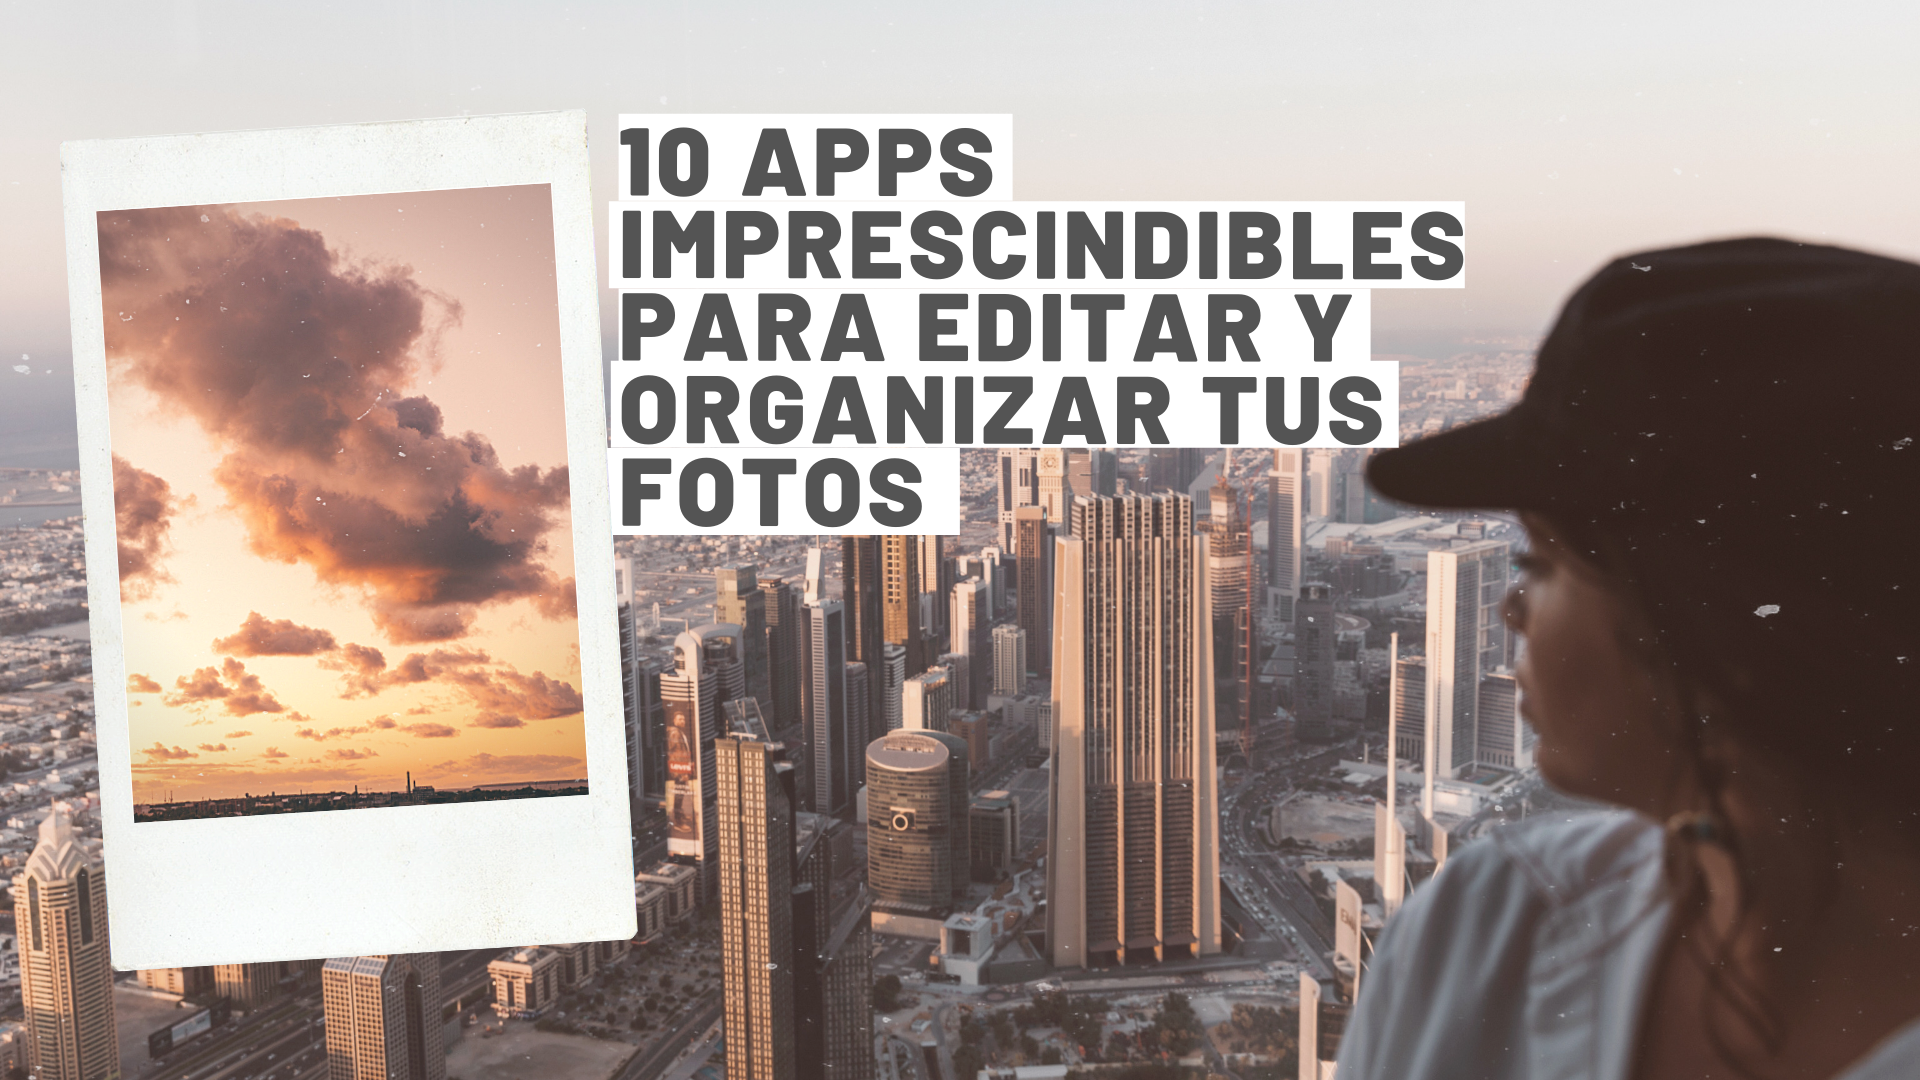 10 apps imprescindibles para editar y organizar tus fotos﻿